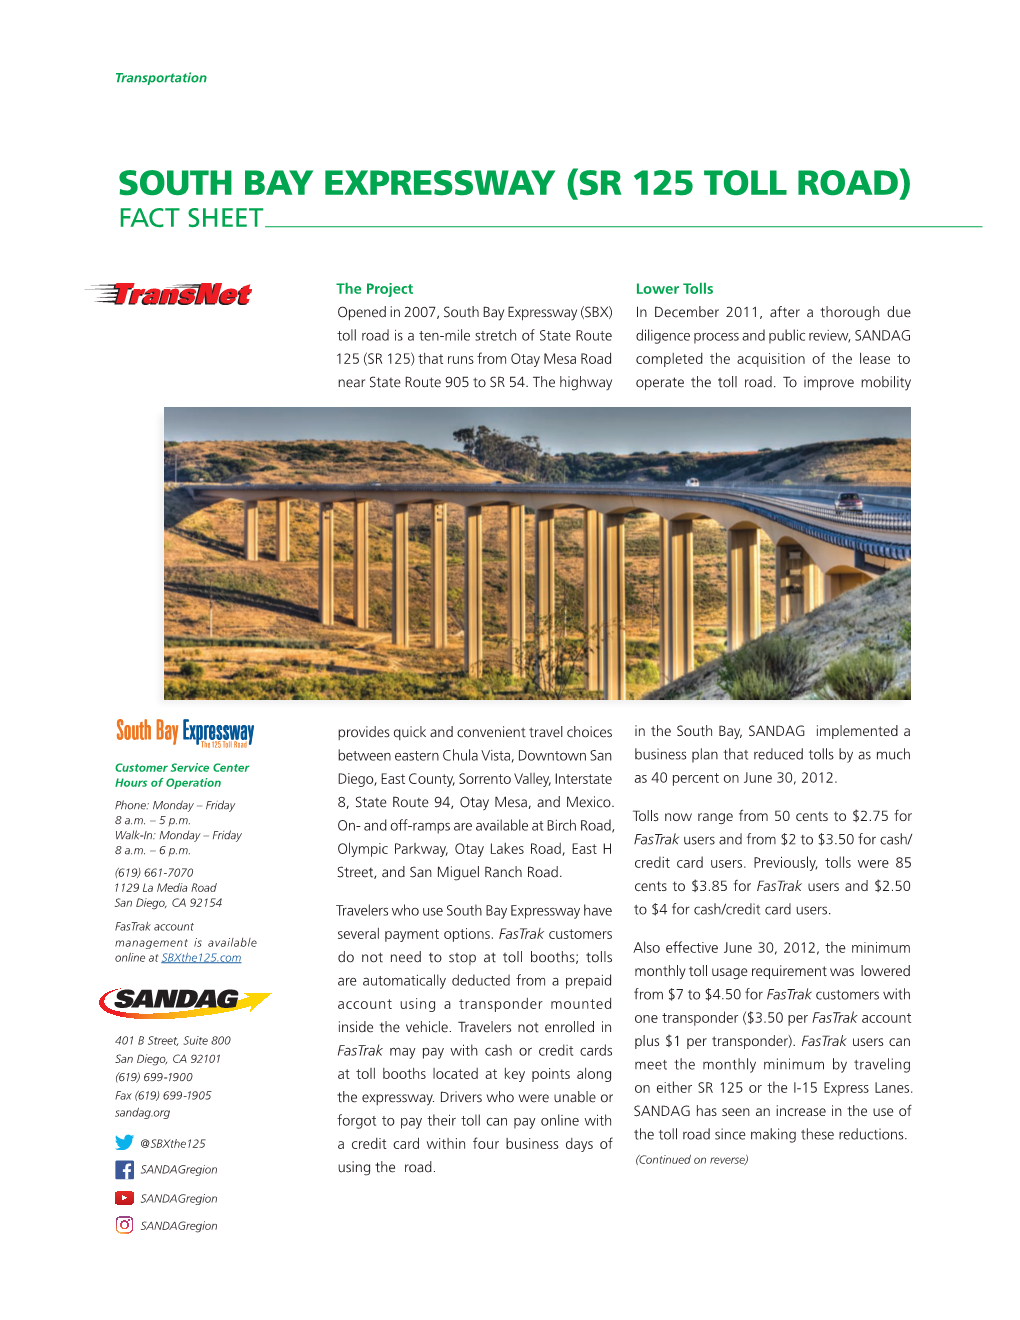 South Bay Expressway (Sr 125 Toll Road) Fact Sheet